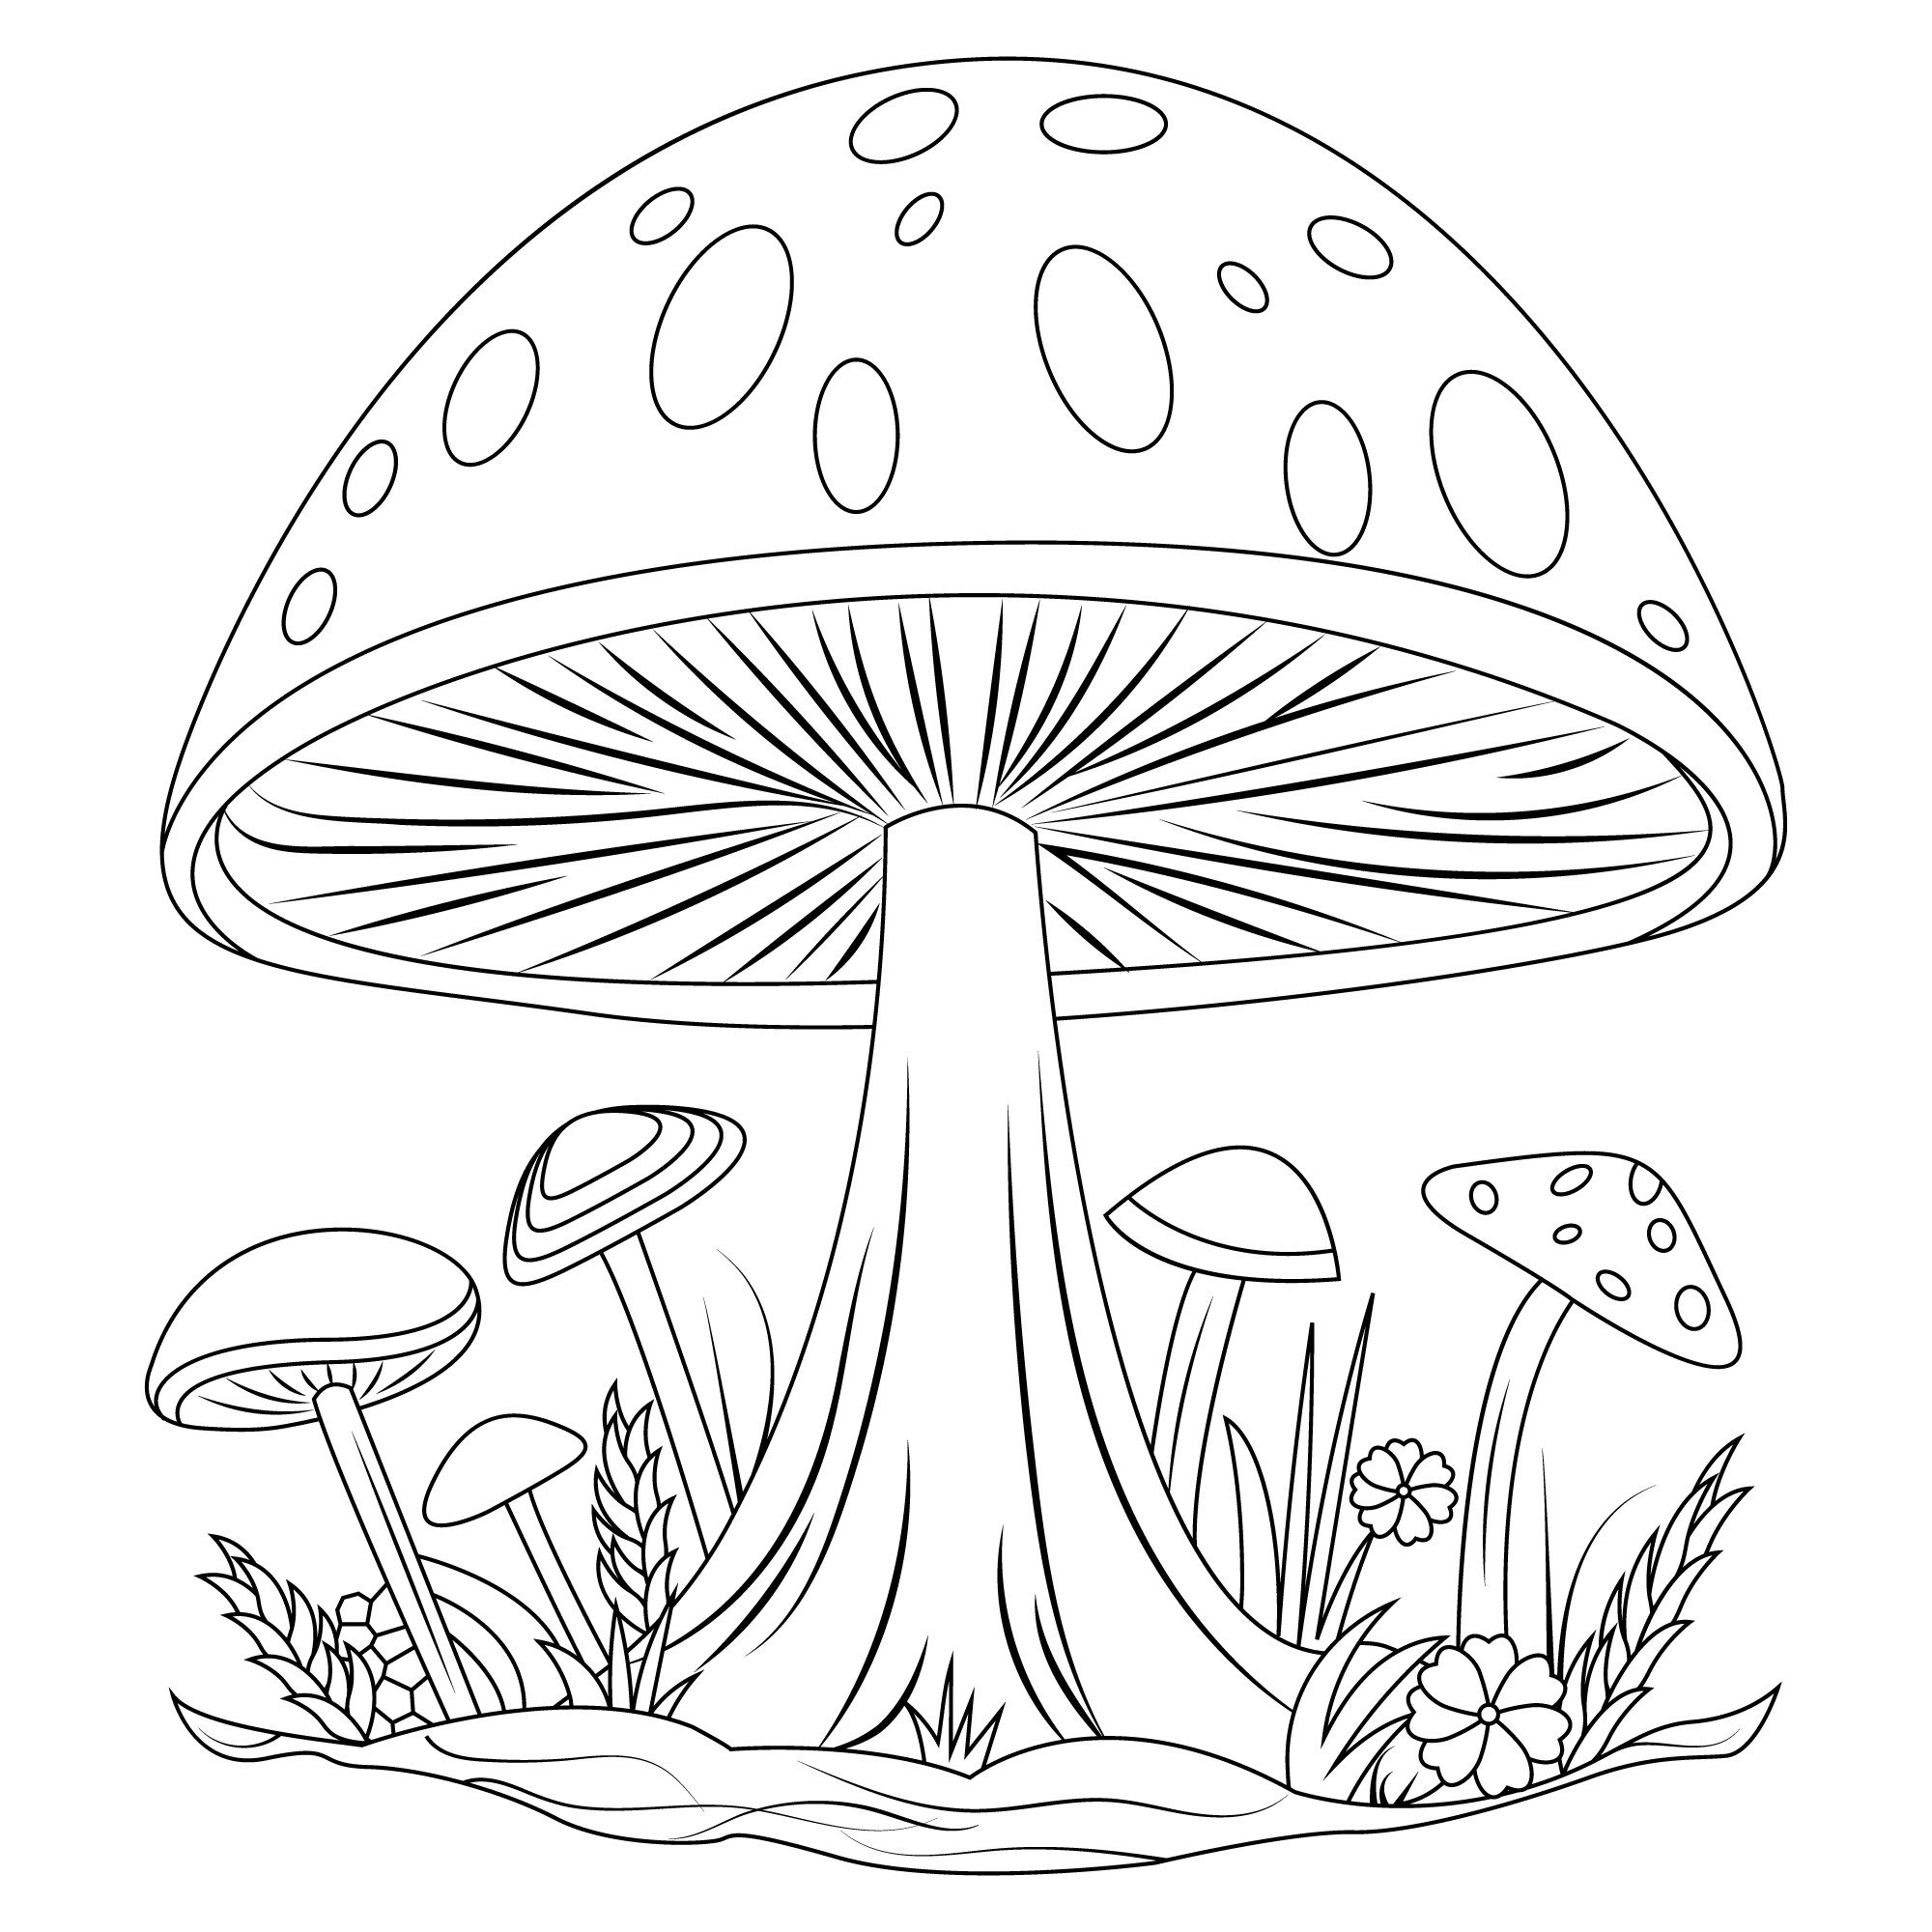 Раскраска для детей: рисунок грибы на поляне